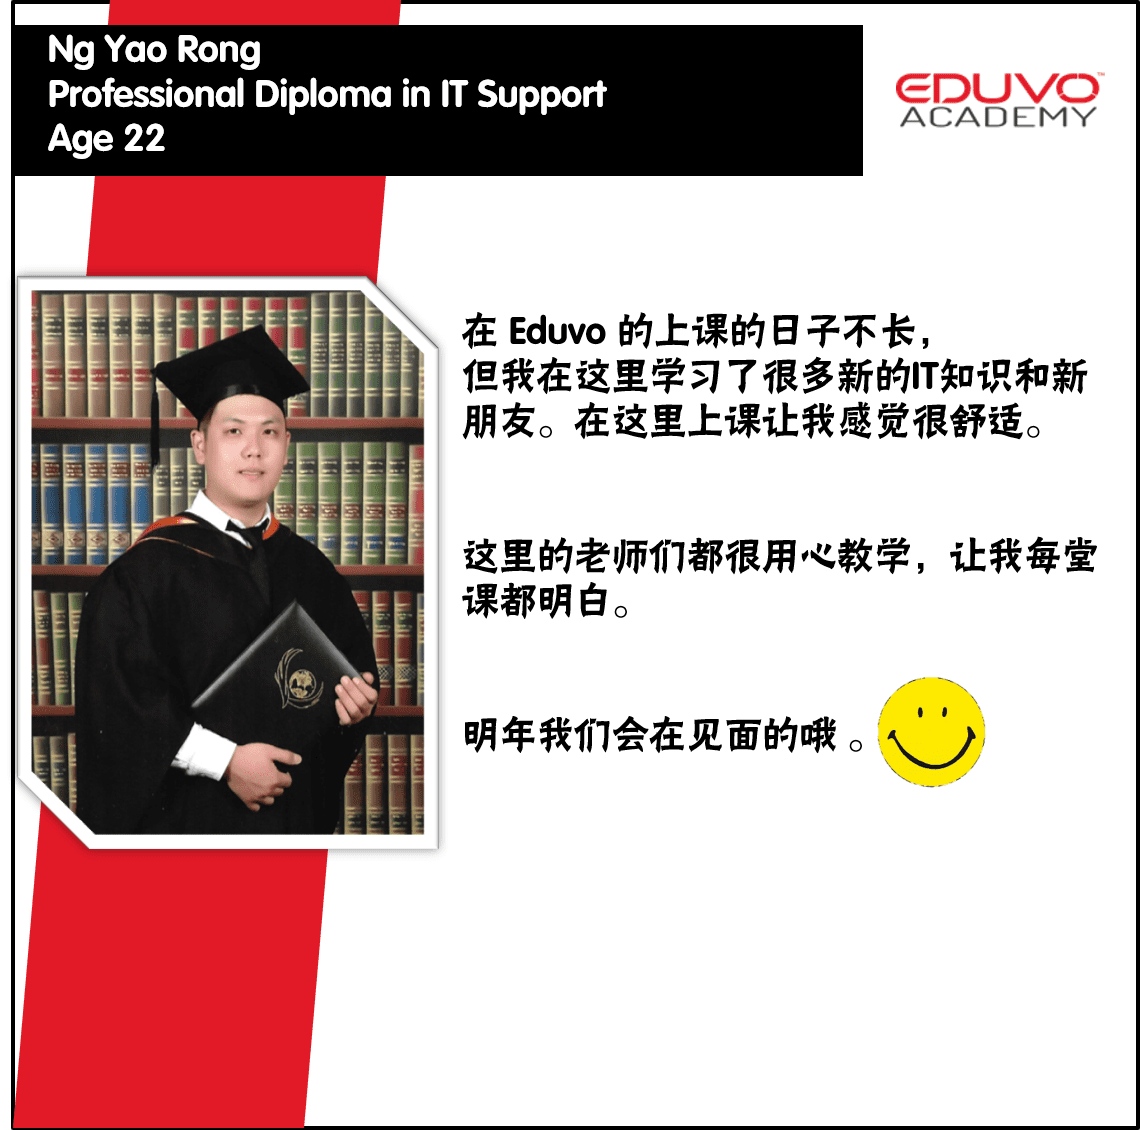 Diploma in IT Support - Ng Yao Rong